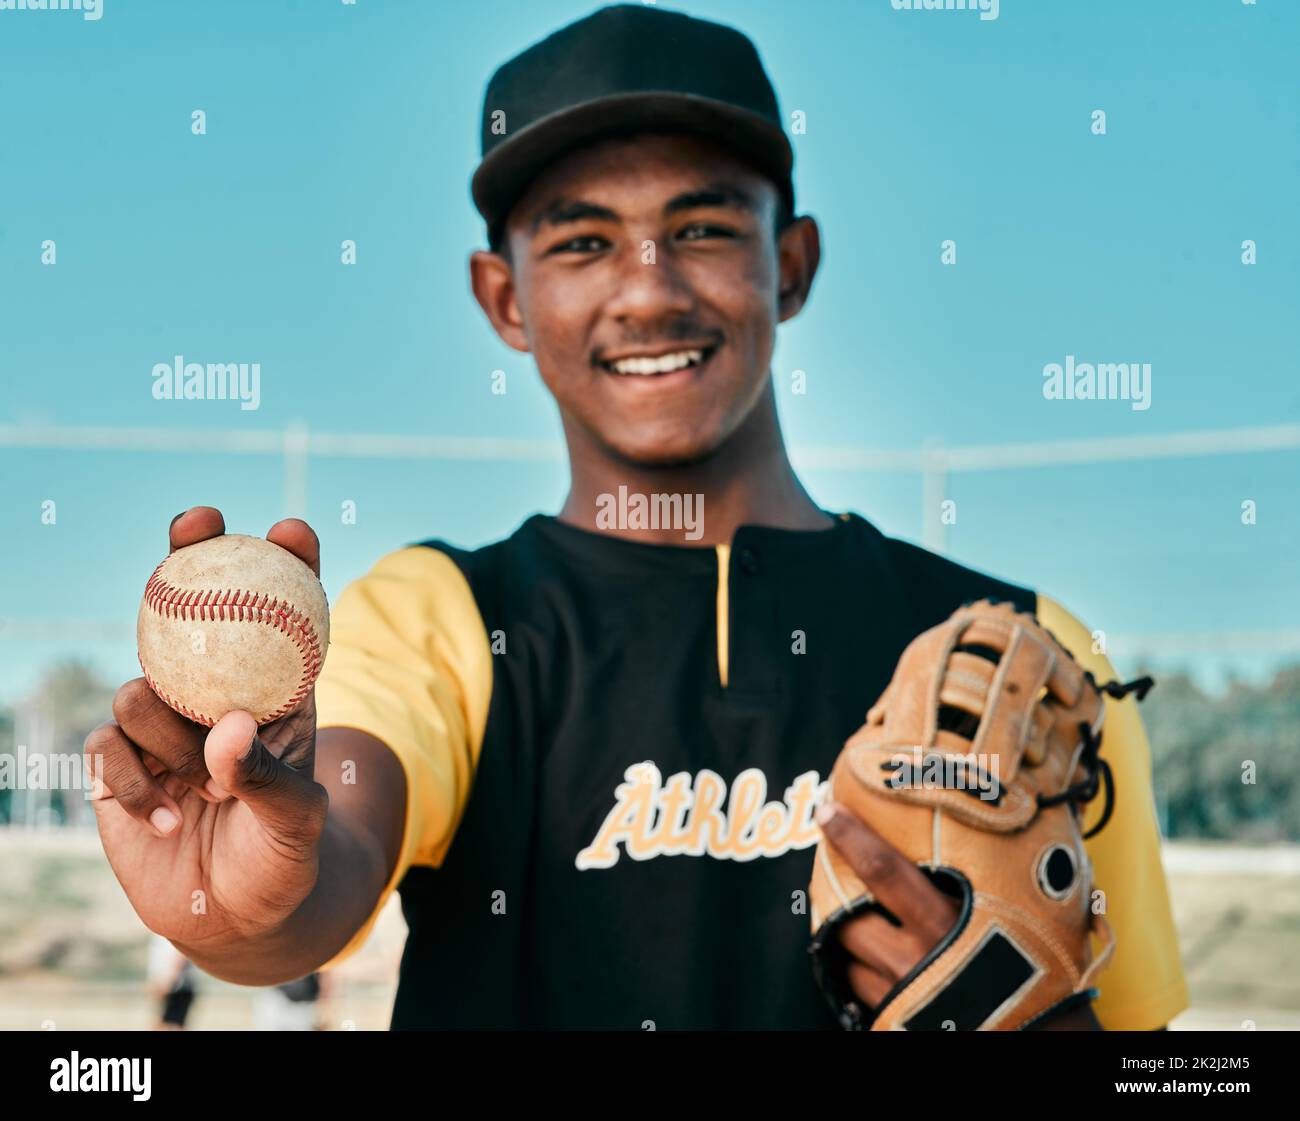 Baseballspiele sind meine erste Wahl. Aufnahme eines jungen Baseballspielers, der einen Baseballhandschuh trägt und einen Ball hält. Stockfoto